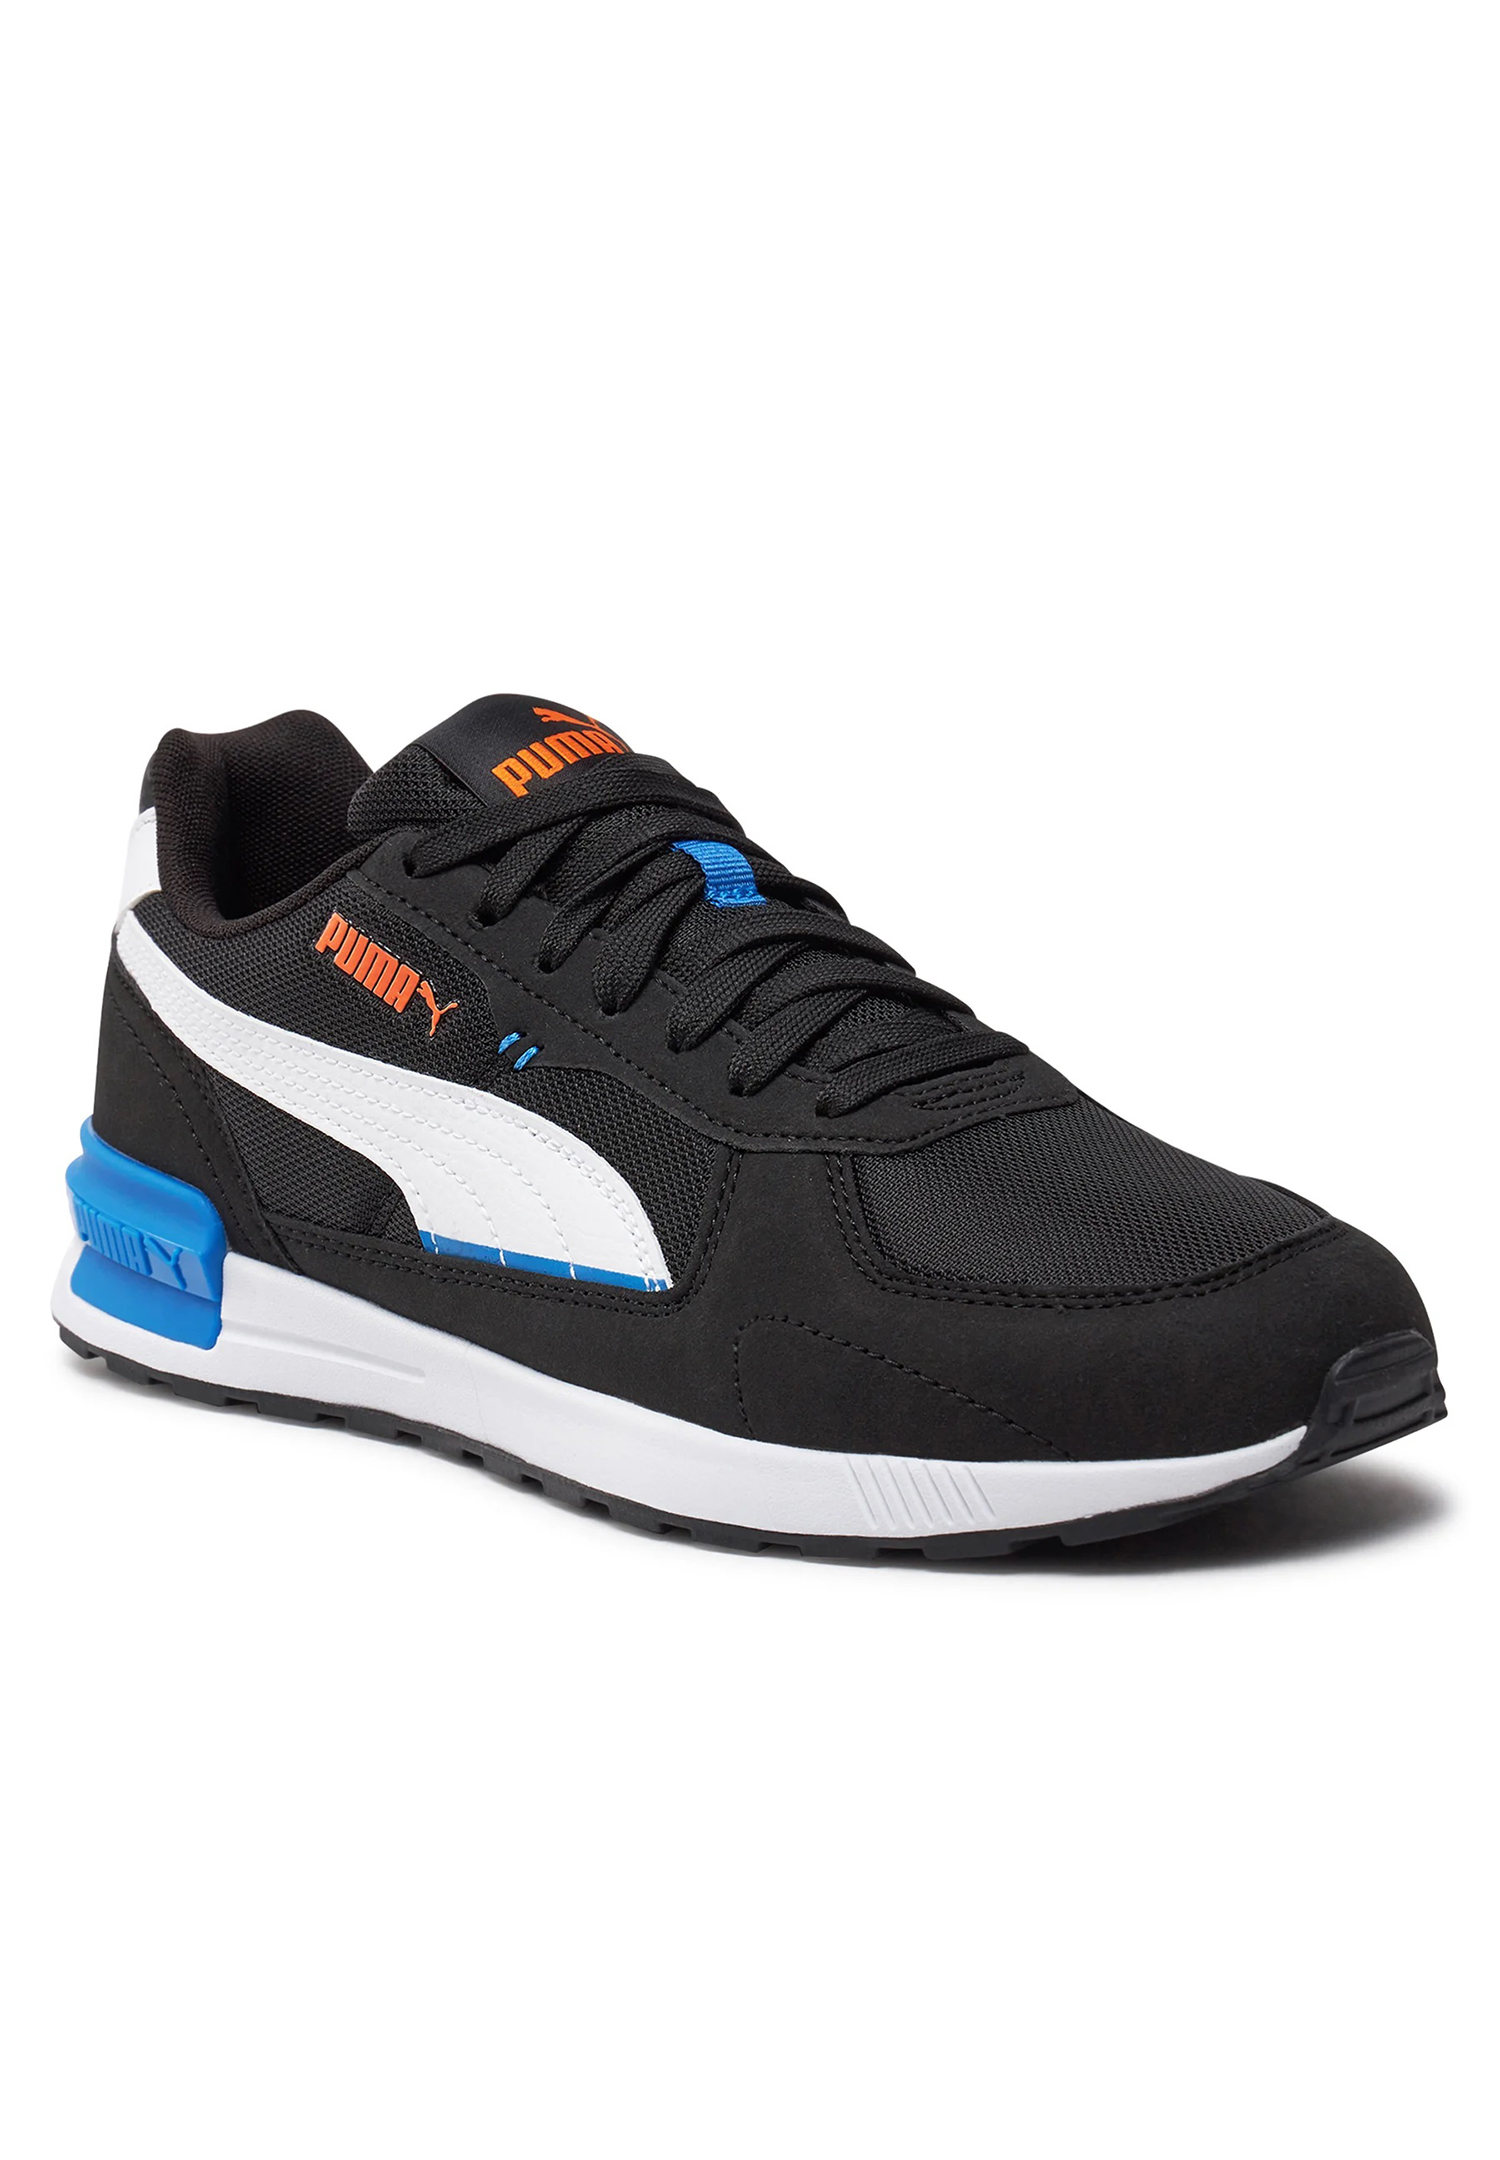 Puma Graviton Unisex Sneaker Sportschuh 380738 51 schwarz-weiß-blau